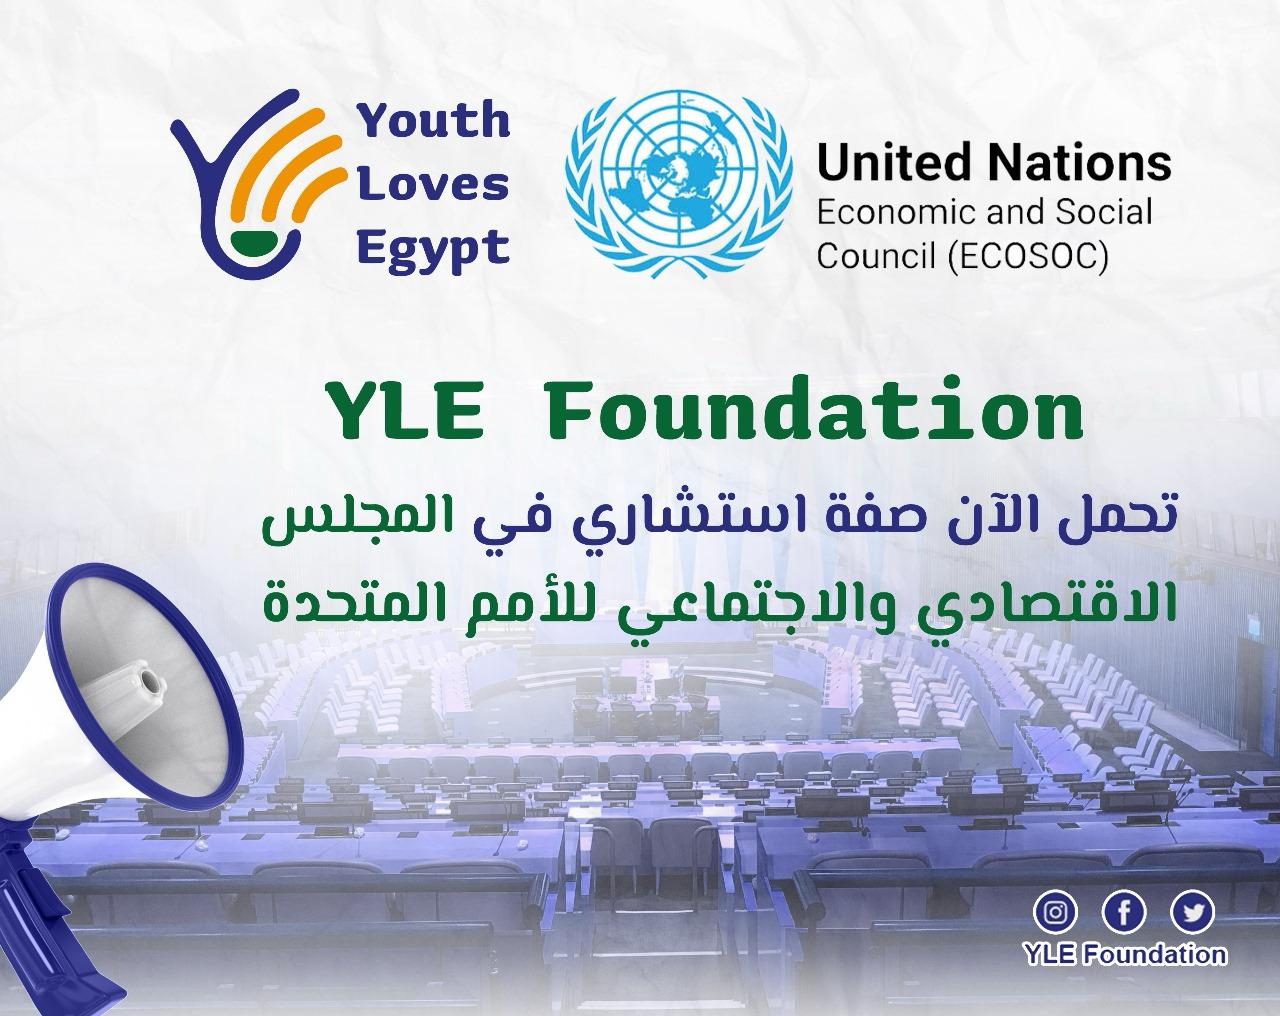 منح مؤسسة شباب بتحب مصر صفة استشاري في المجلس الاقتصادي والاجتماعي للأمم المتحدة 